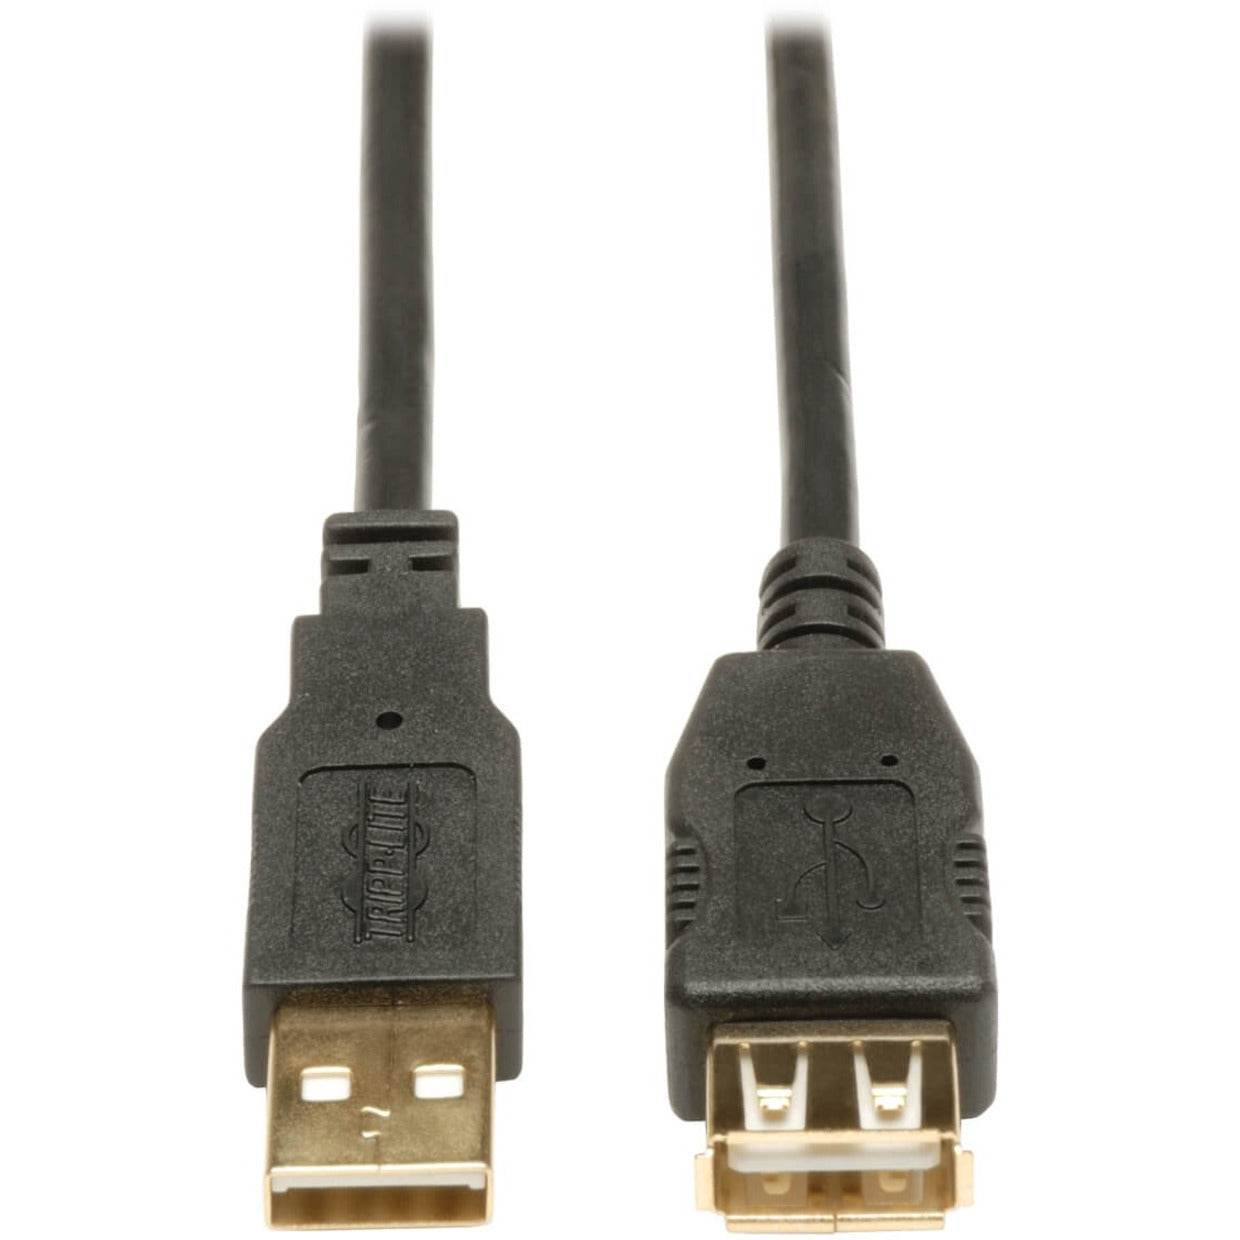 تريب لايت U024-016 16 قدم. كبل تمديد USB 2.0 ذهبي (USB A M/F) ، مصبوب ، موصل نحاسي ، مع شيلد ، أسود تريب لايت